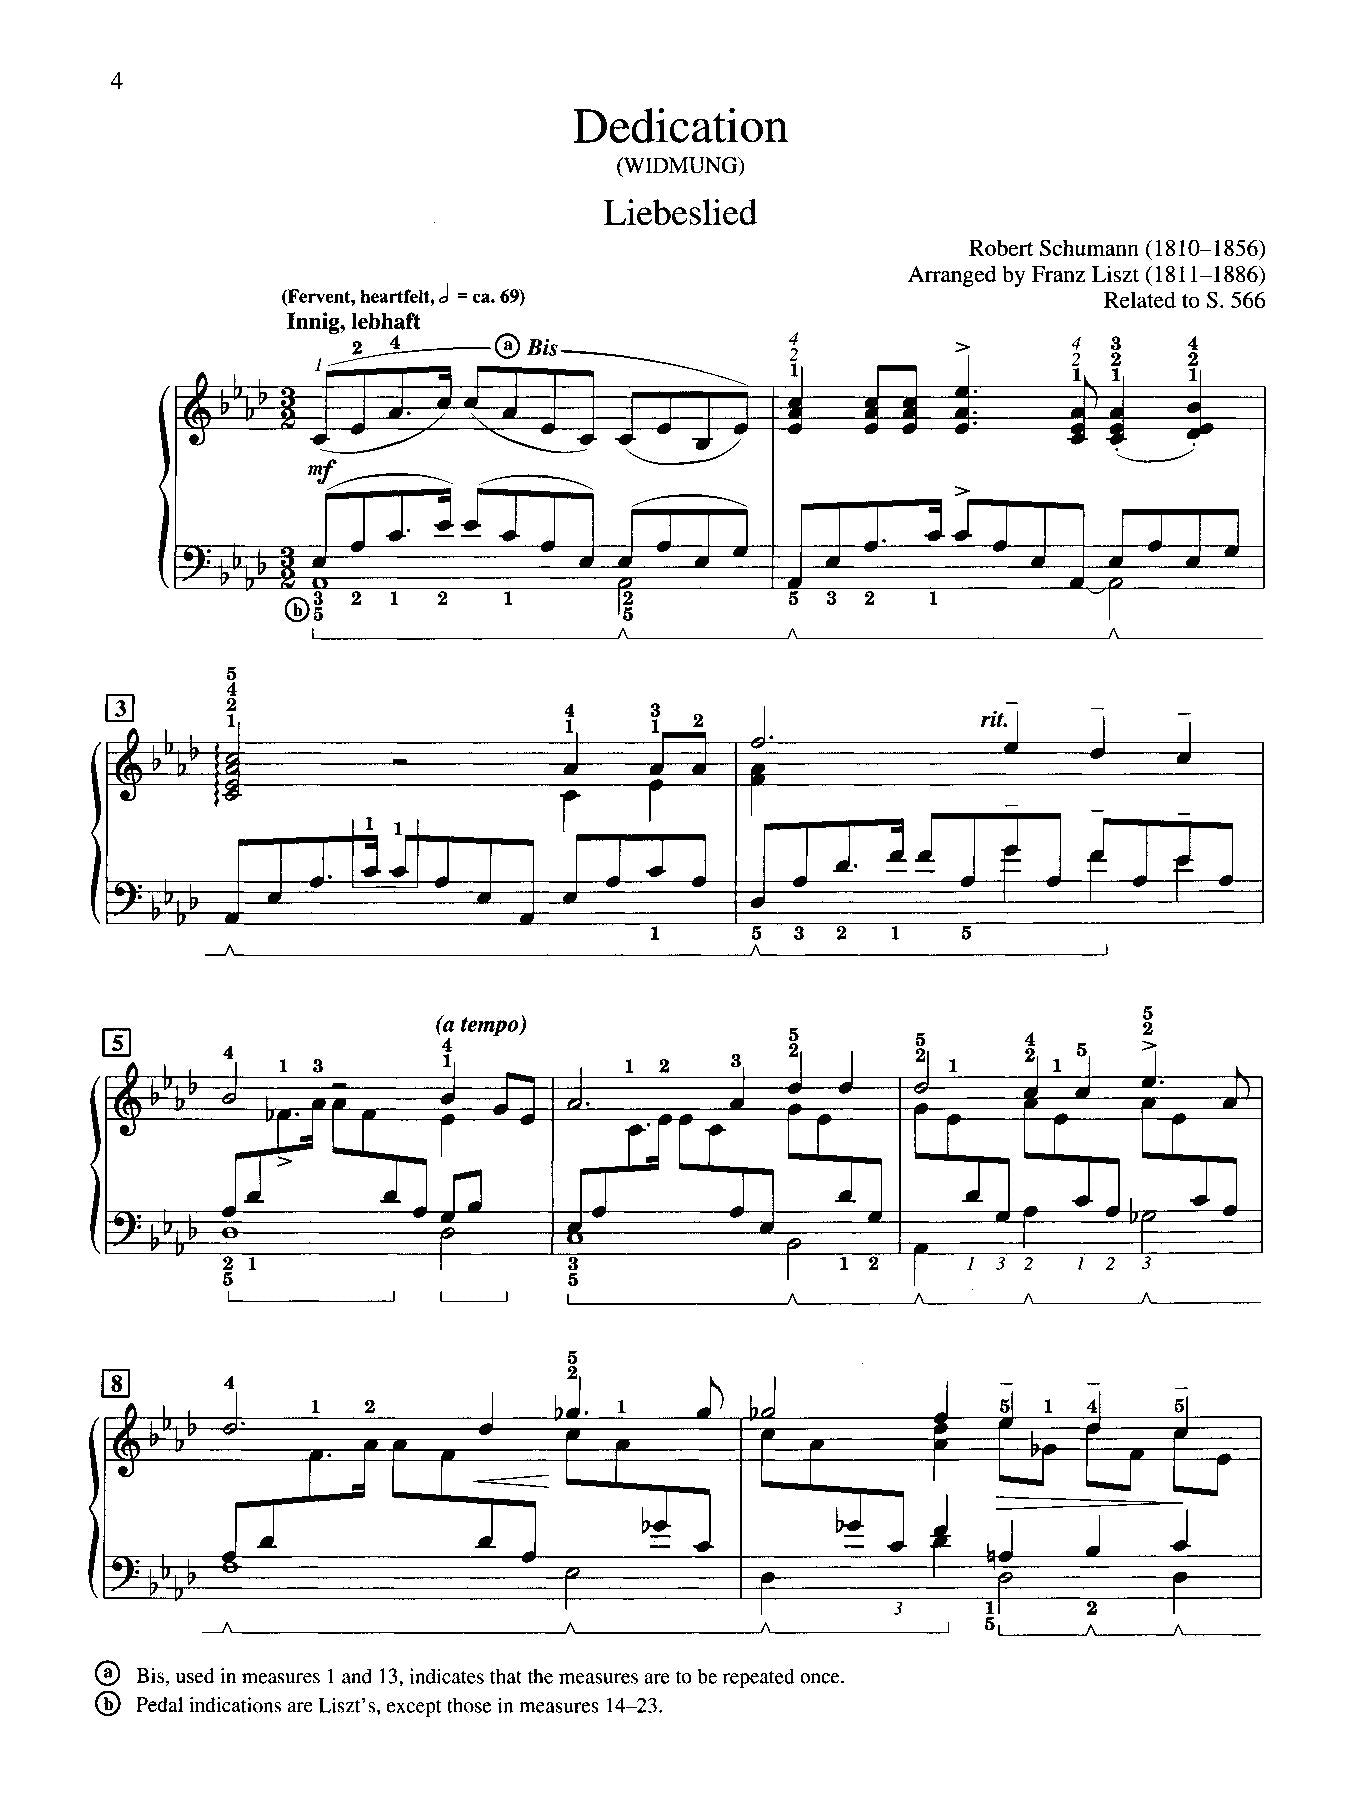 Schumann-Liszt: Dedication (Widmung)